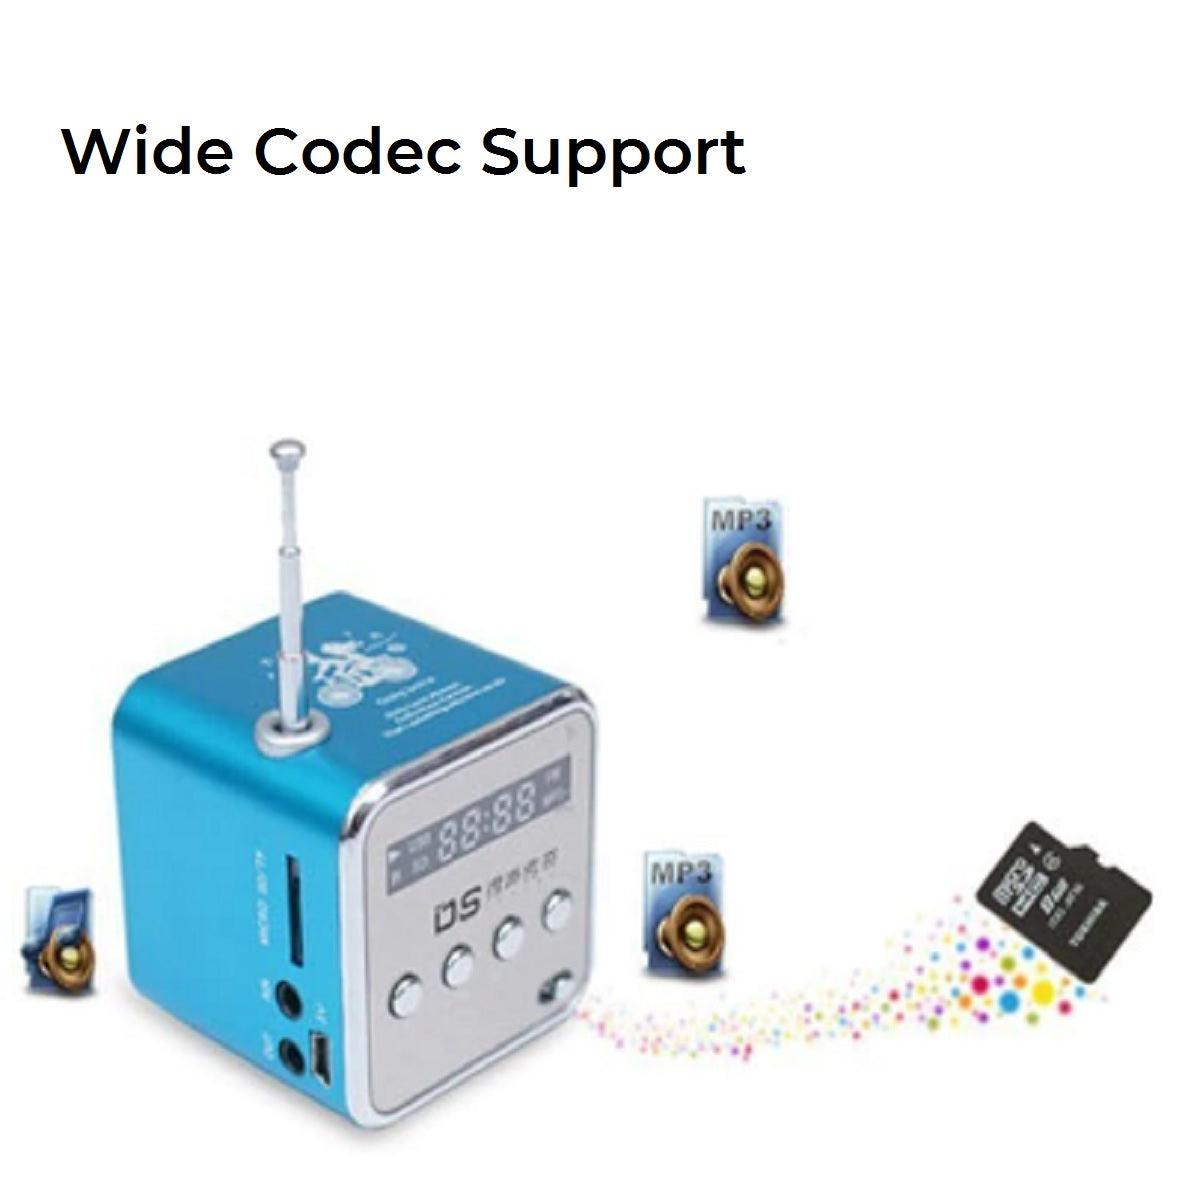 TD-V26 Portable Mini Stereo FM Radio - USB Support - dealskart.com.au